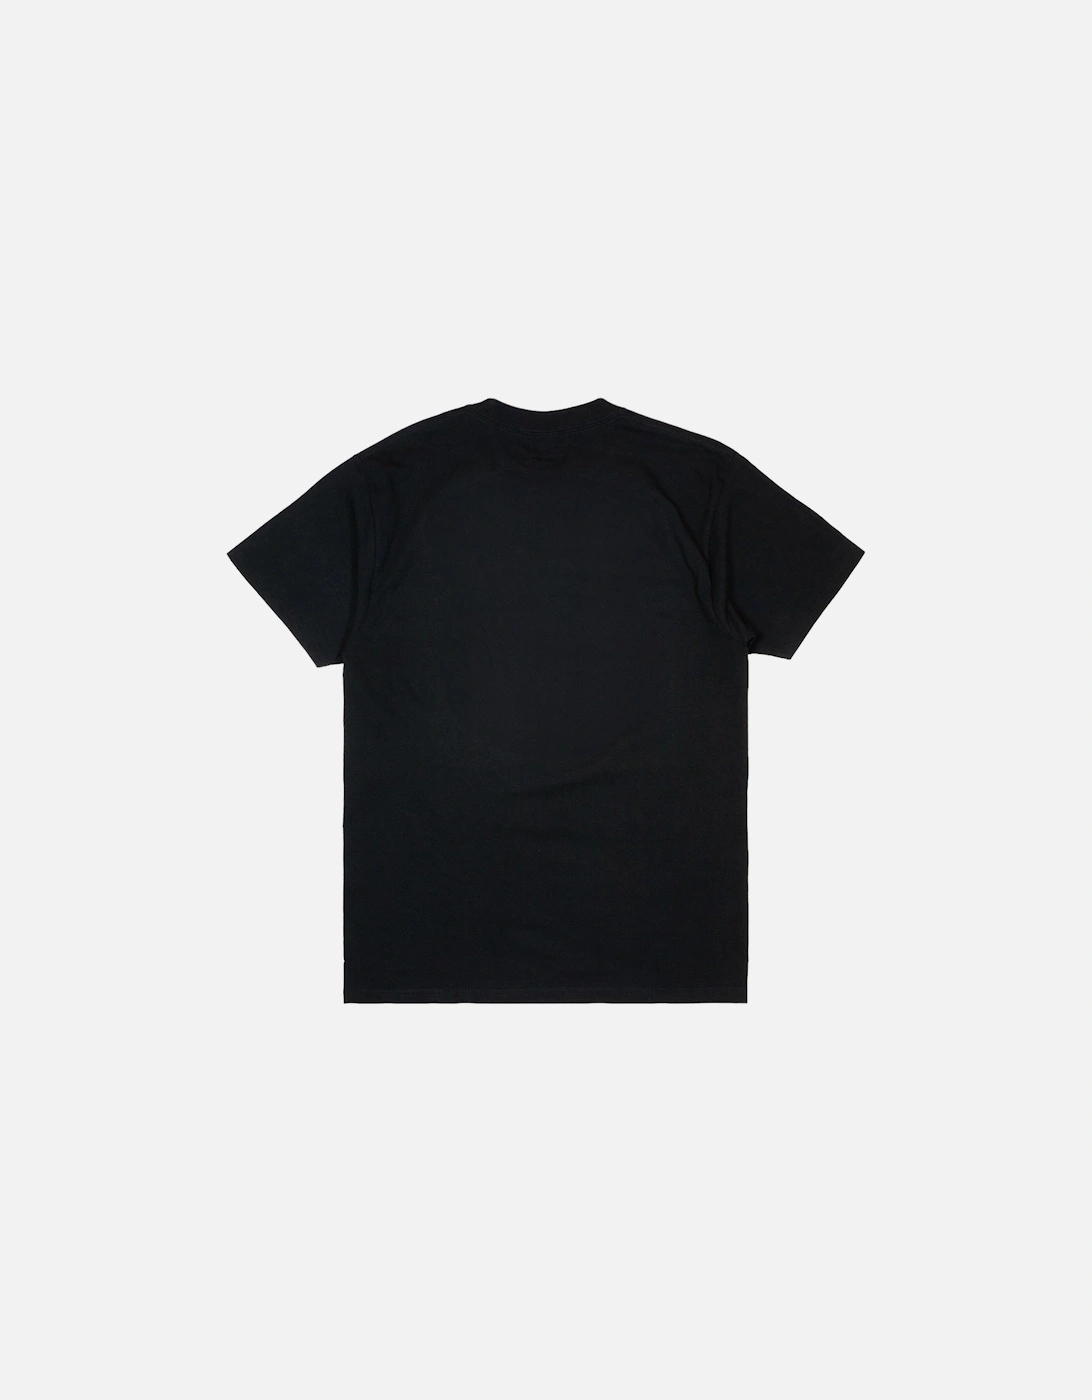 OG Logo T-Shirt - Black